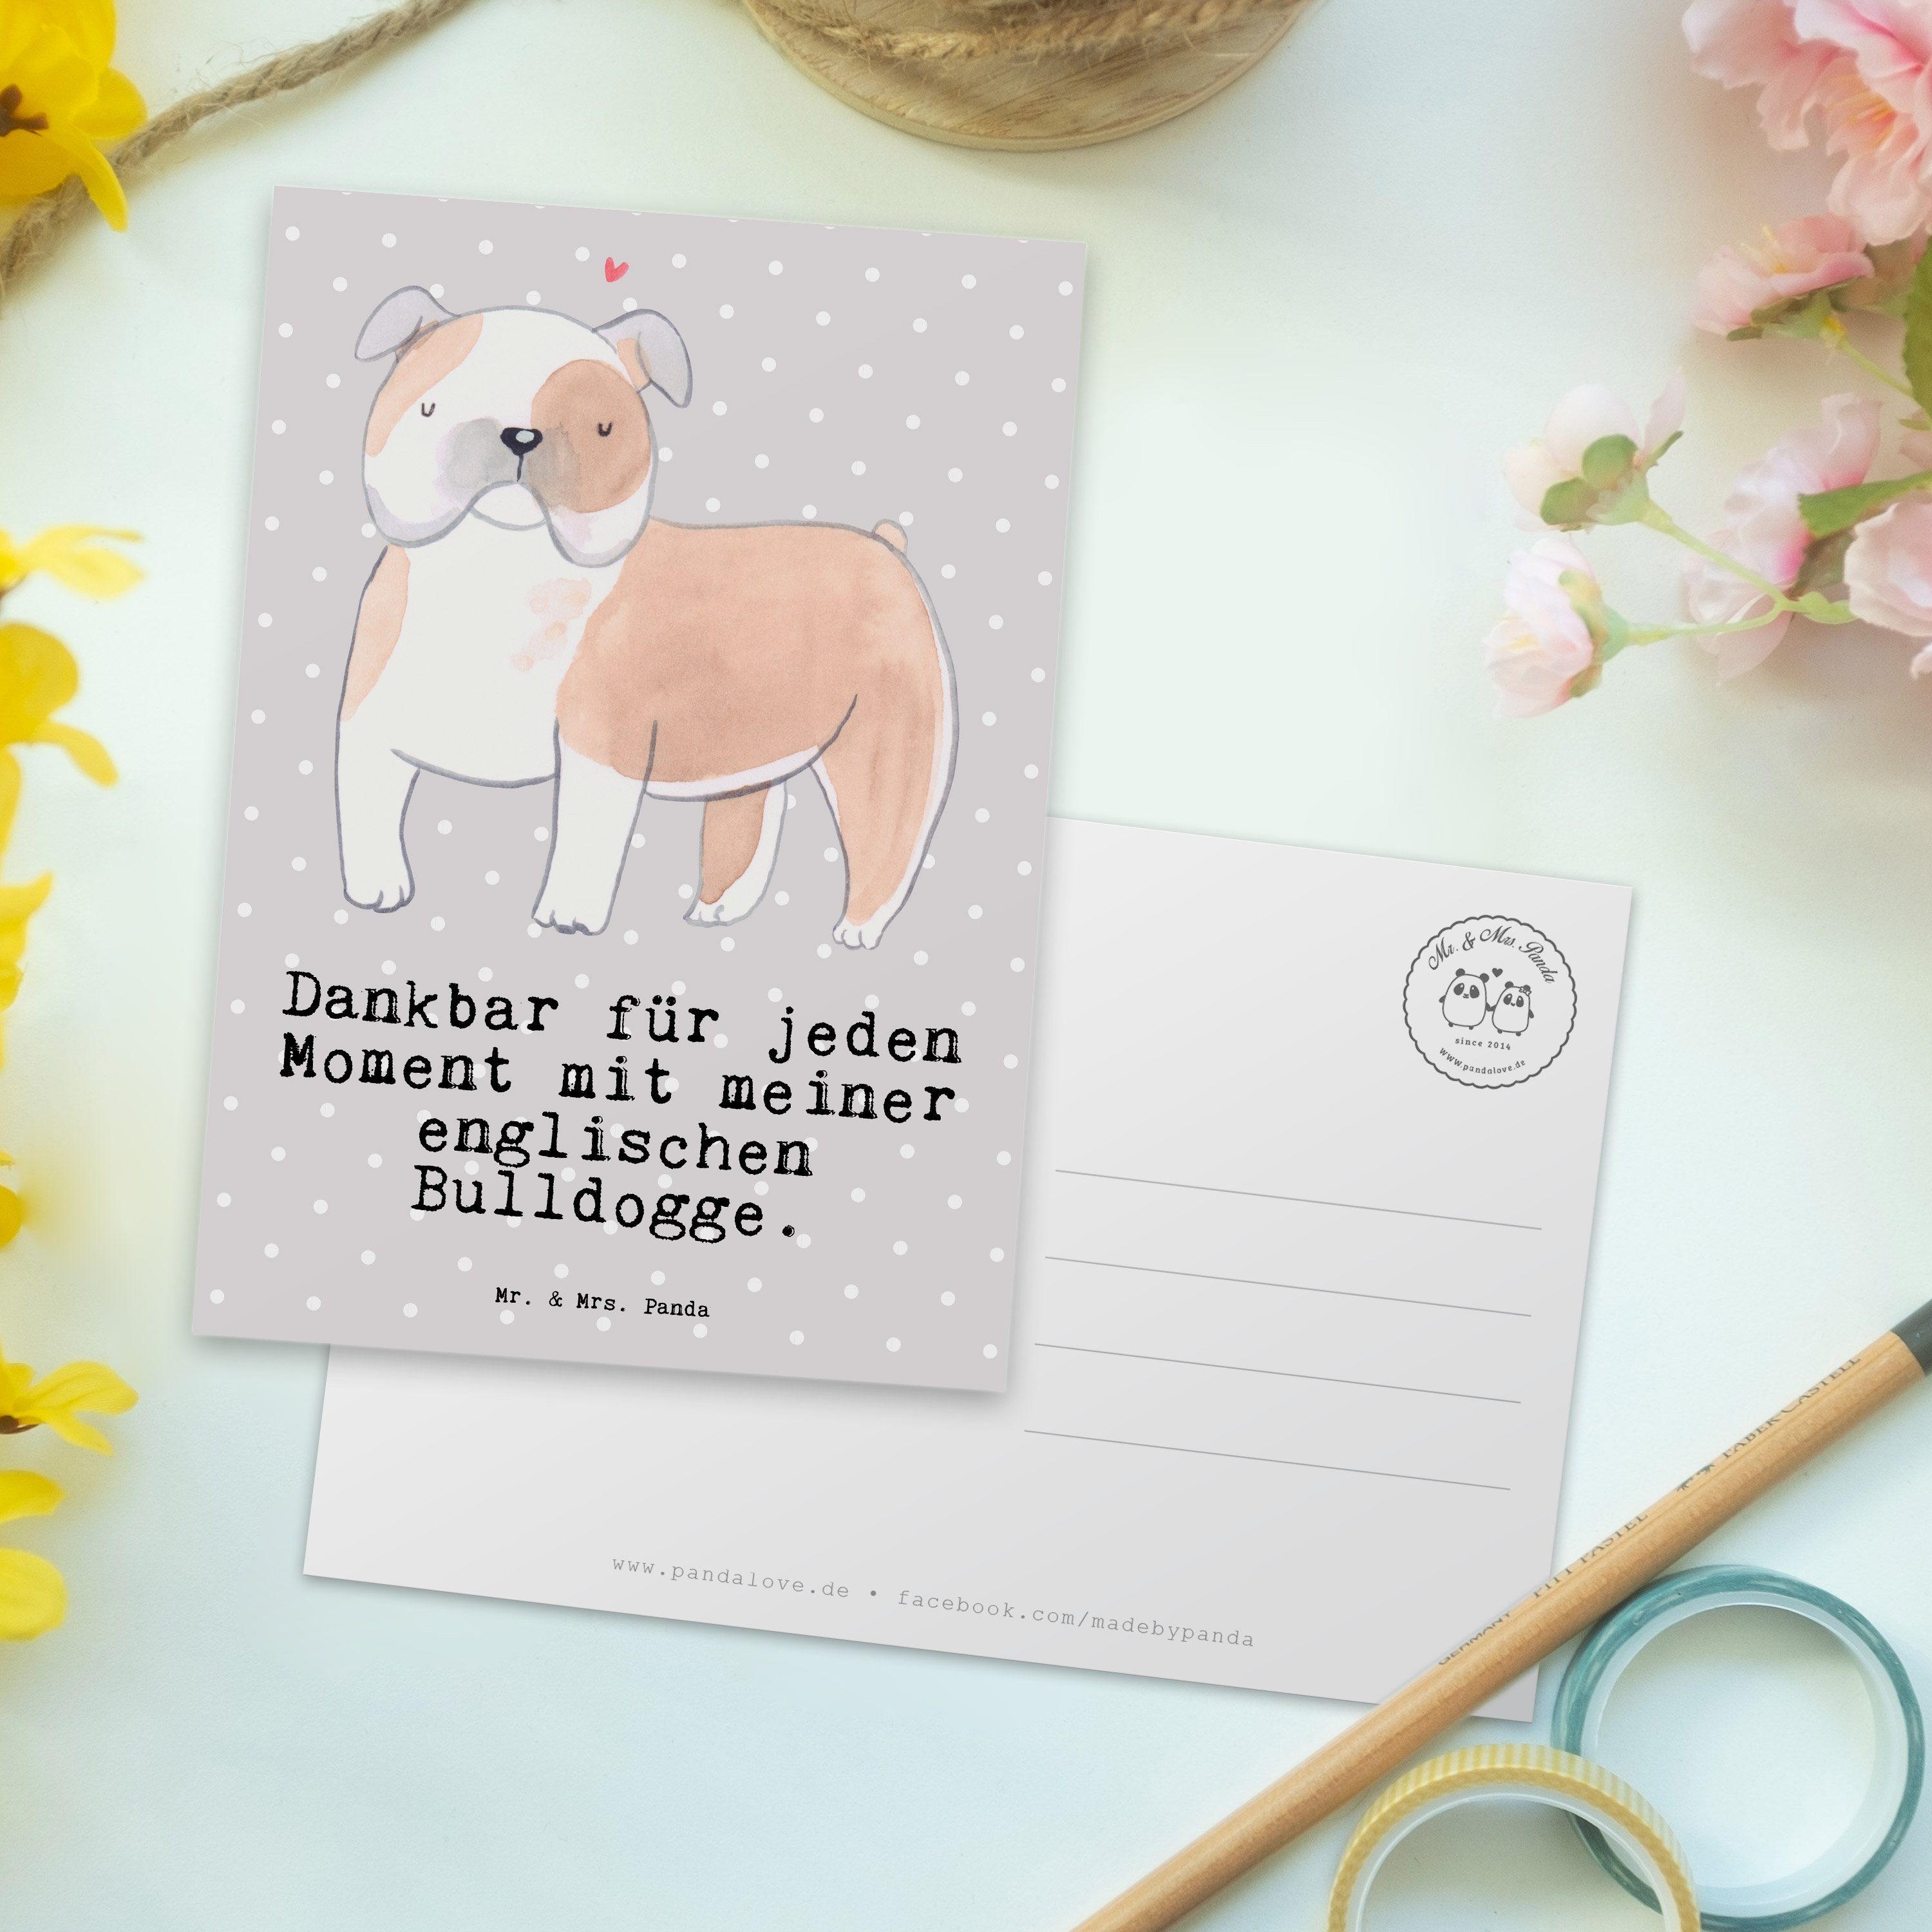 Mr. & Geschenk, Grau - Englische - Pastell Panda Moment Postkarte Geschenkkarte Bulldogge Mrs